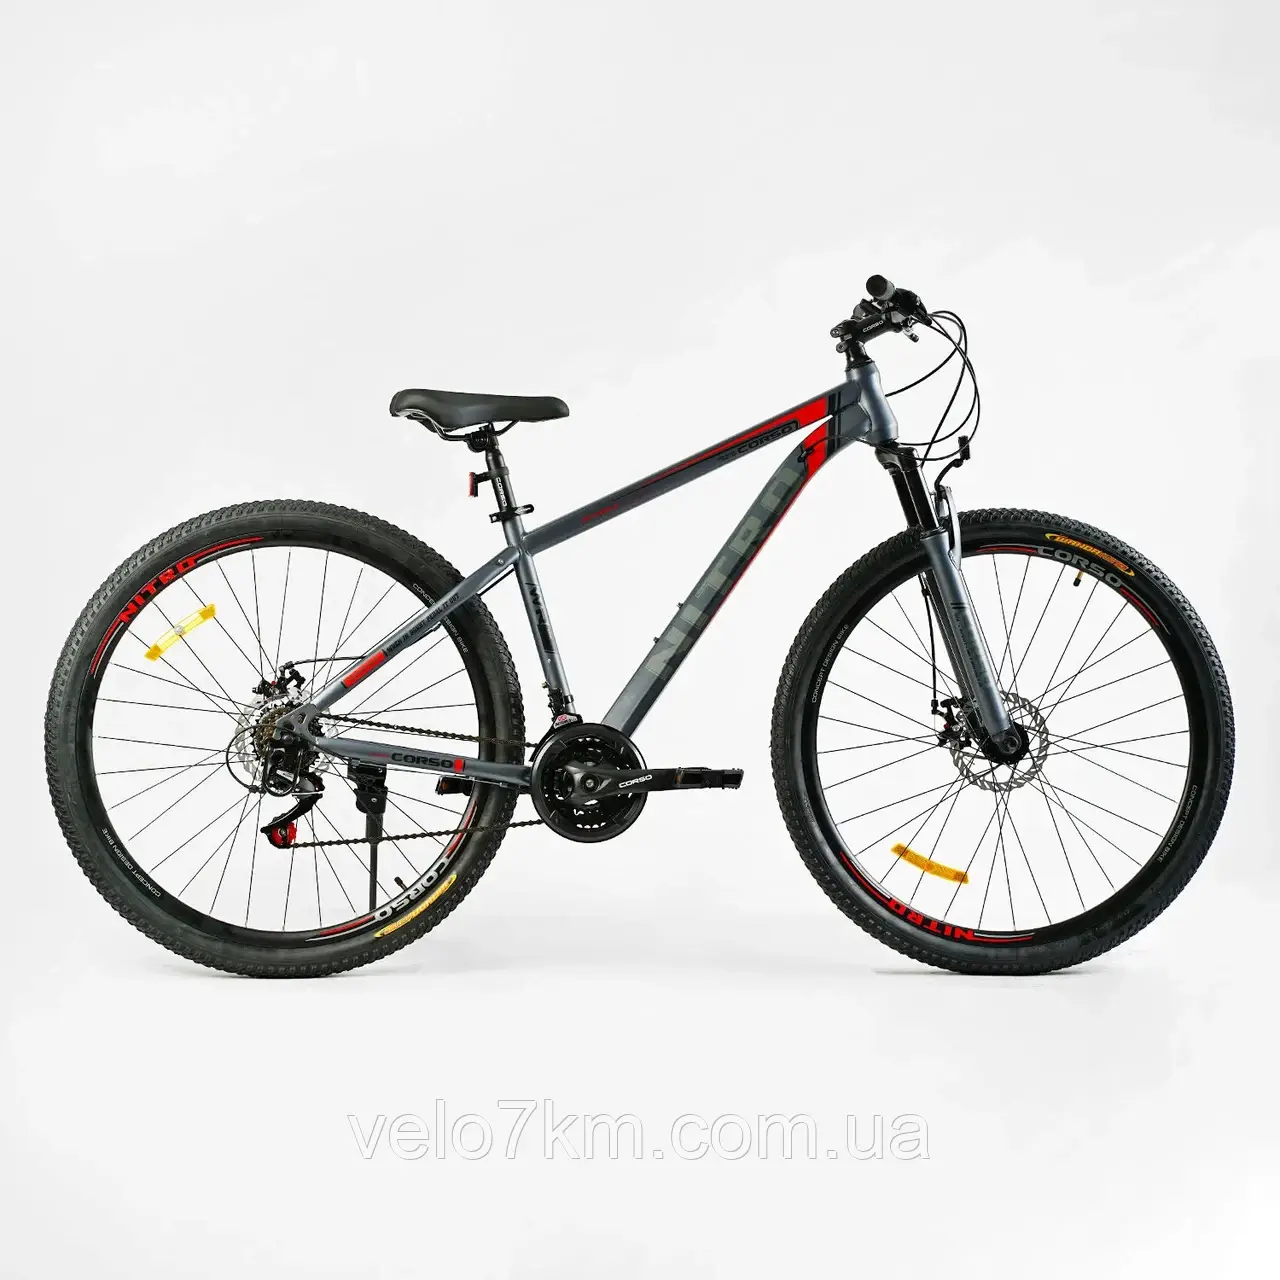 Спортивний велосипед Corso Nitro 29" сталева рама 17" обладнання SunRun 21 швидкість, зібраний на 75%